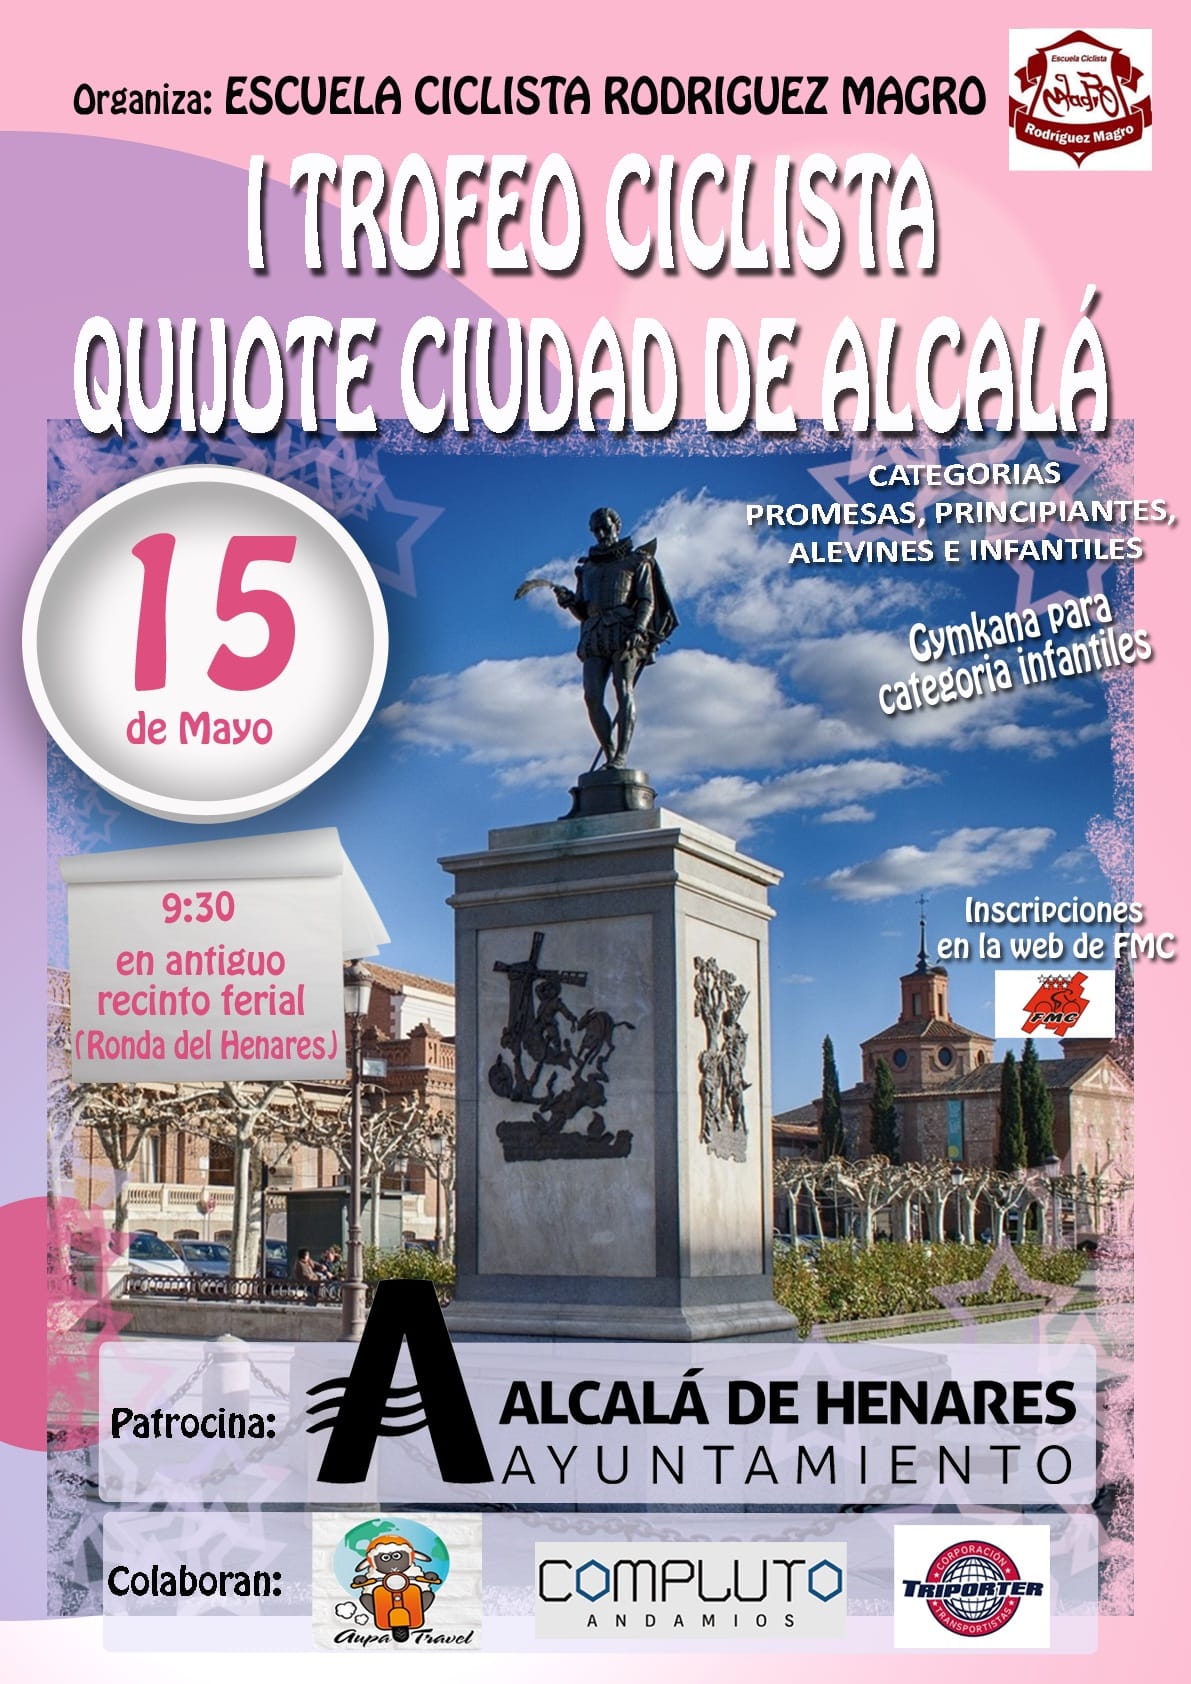 La Escuela Ciclista Rodríguez Magro propone el I Trofeo Ciclista Quijote – Ciudad de Alcalá